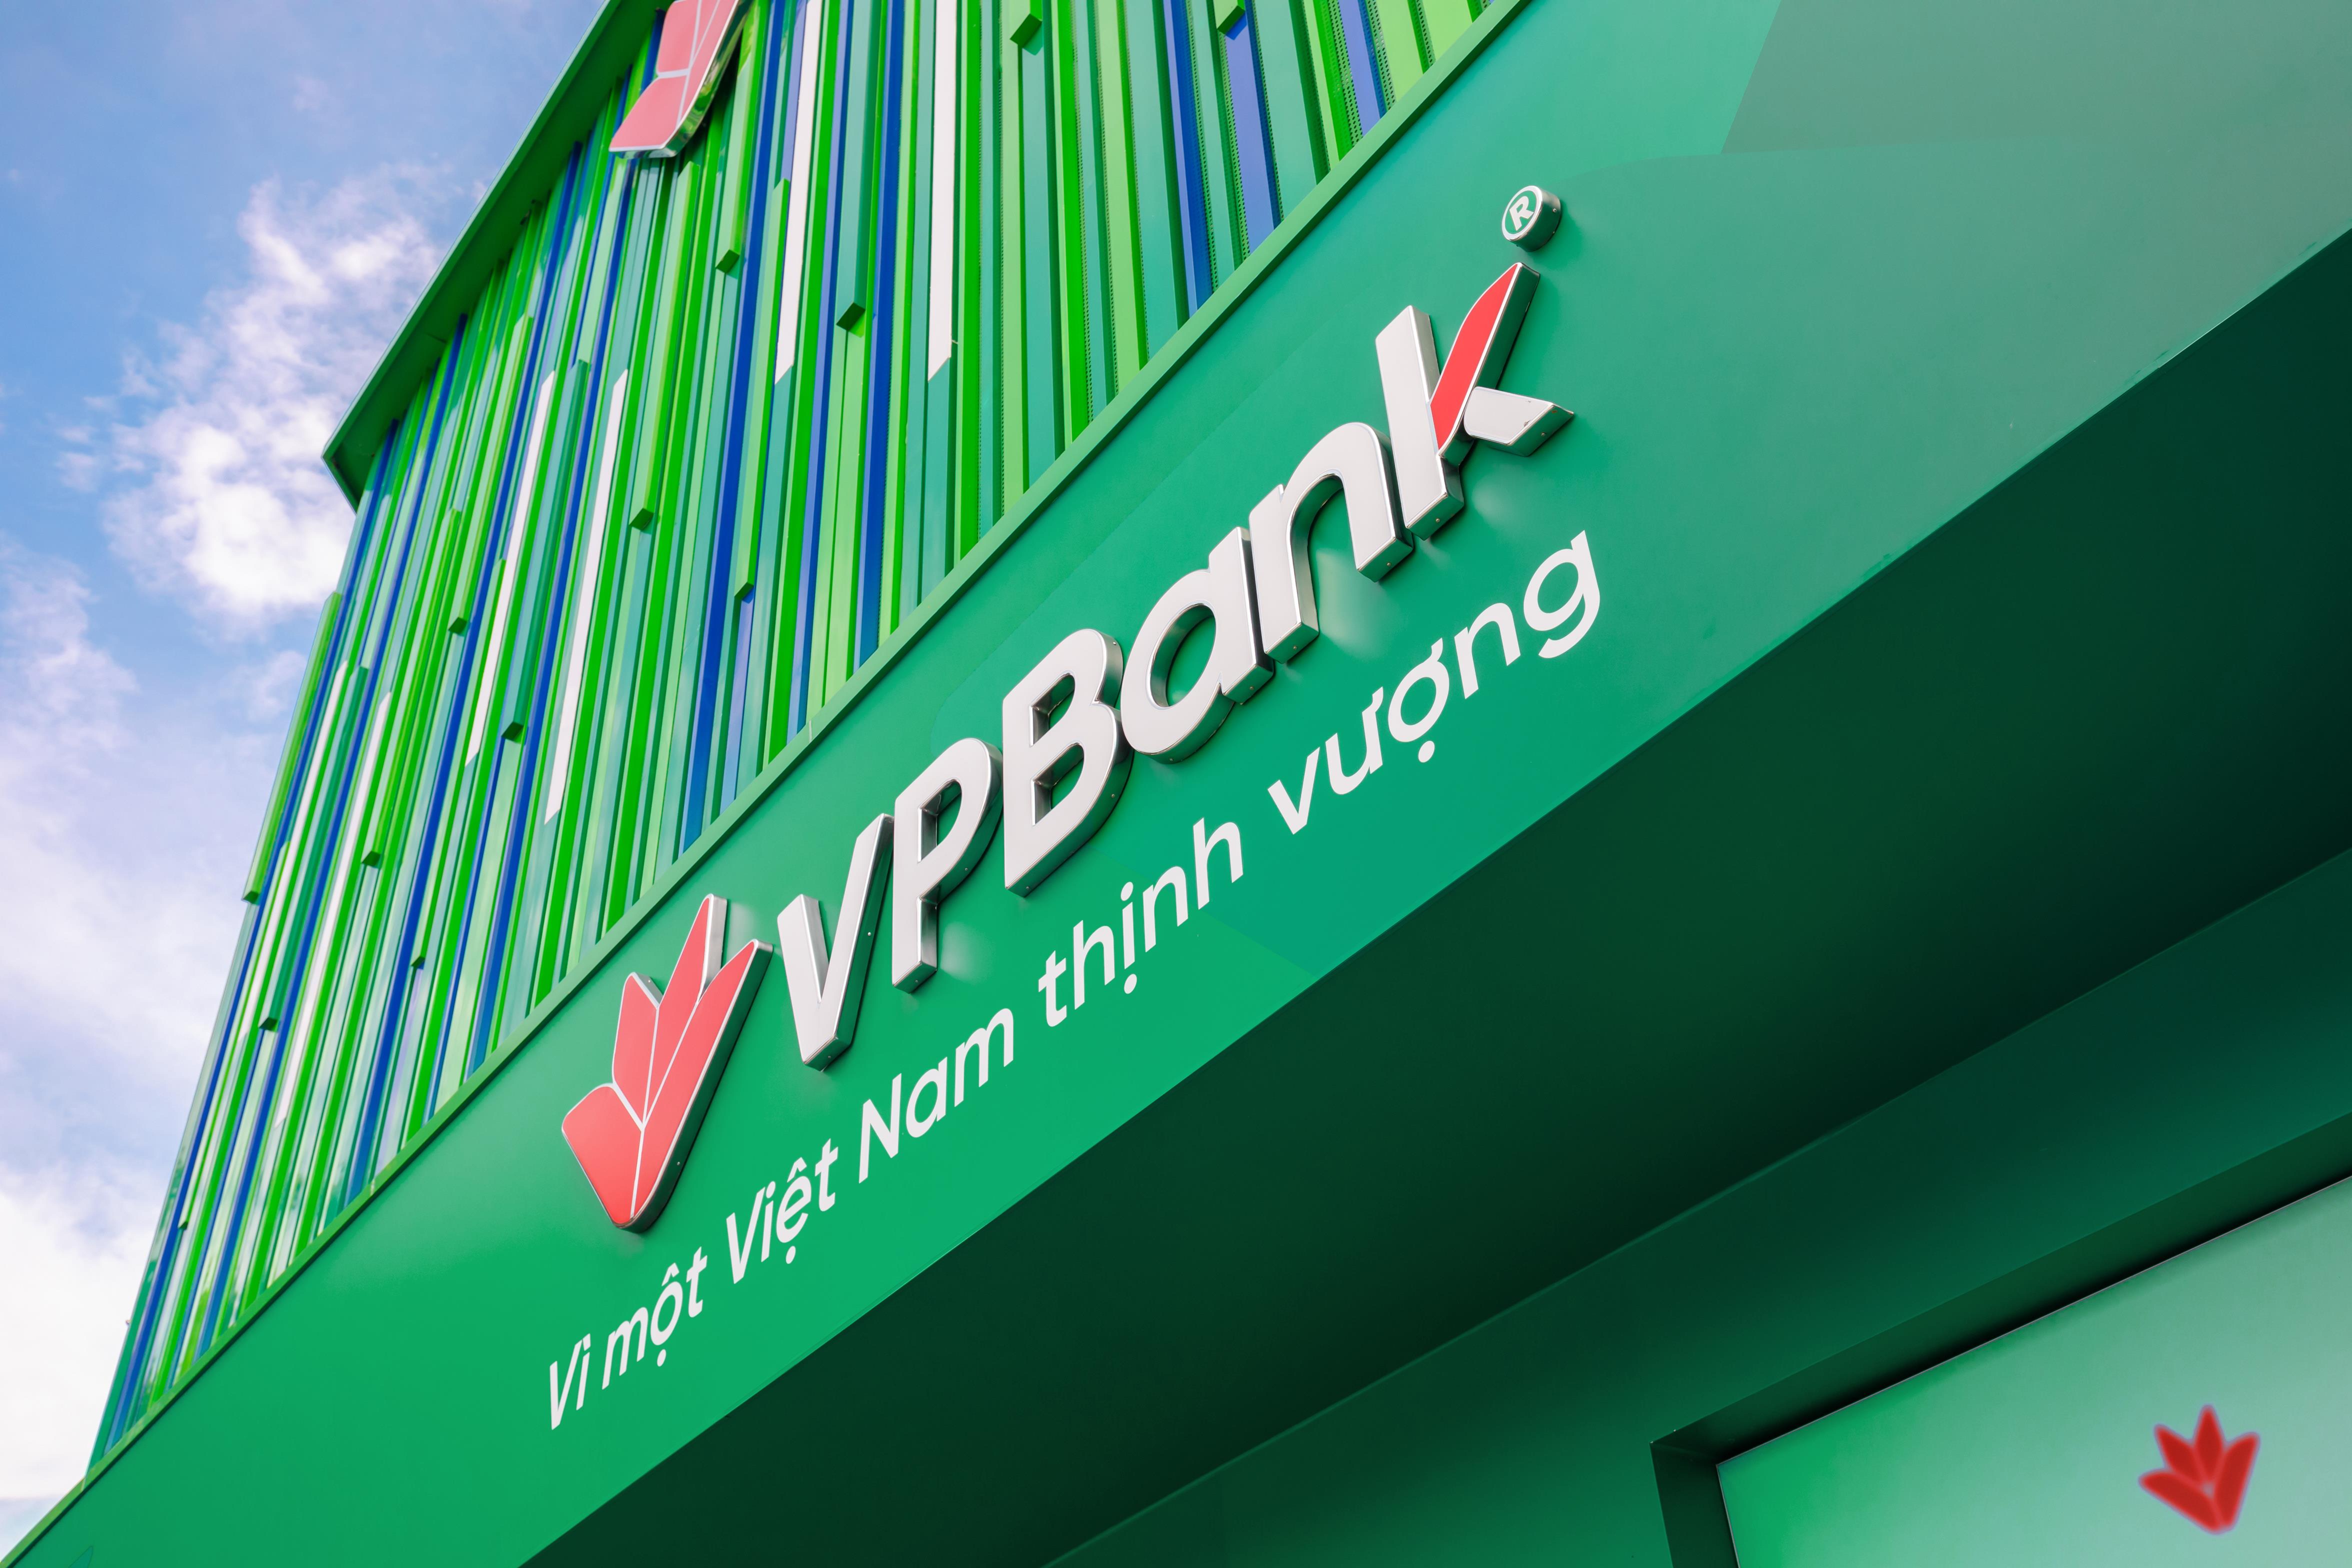 vpbank-thay-đổi-mặt-tiền-chi-nhánh-theo-định-vị-mới-5.jpg